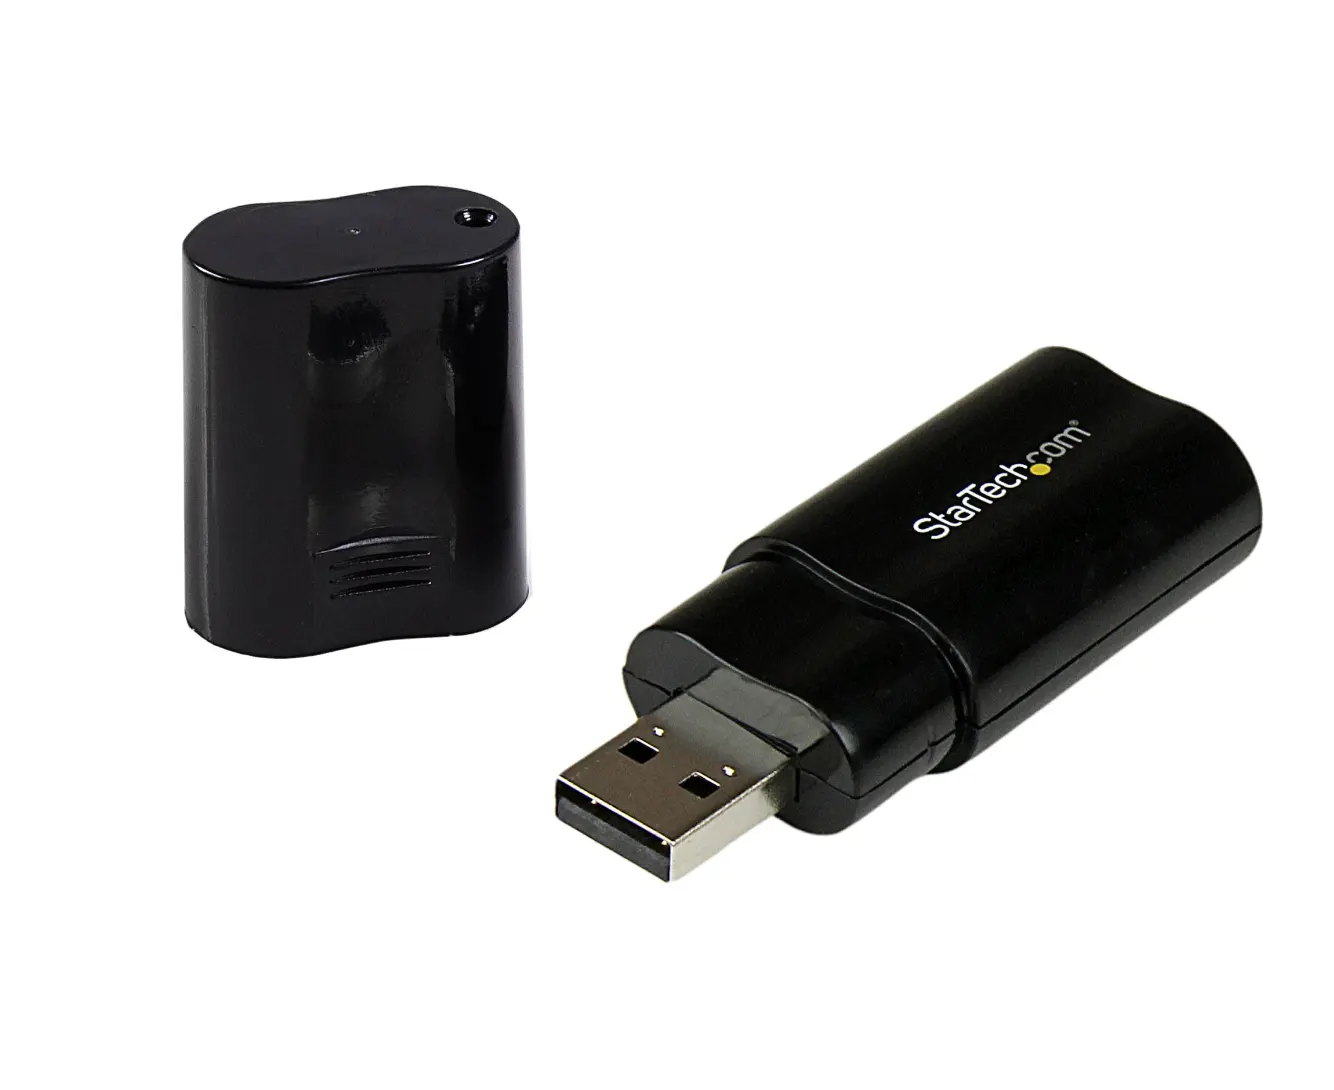 Dongle USB Startech USB 2.0 dalle prestazioni senza pari per scopi di trasferimento Audio dall'esportatore statunitense a prezzi convenienti